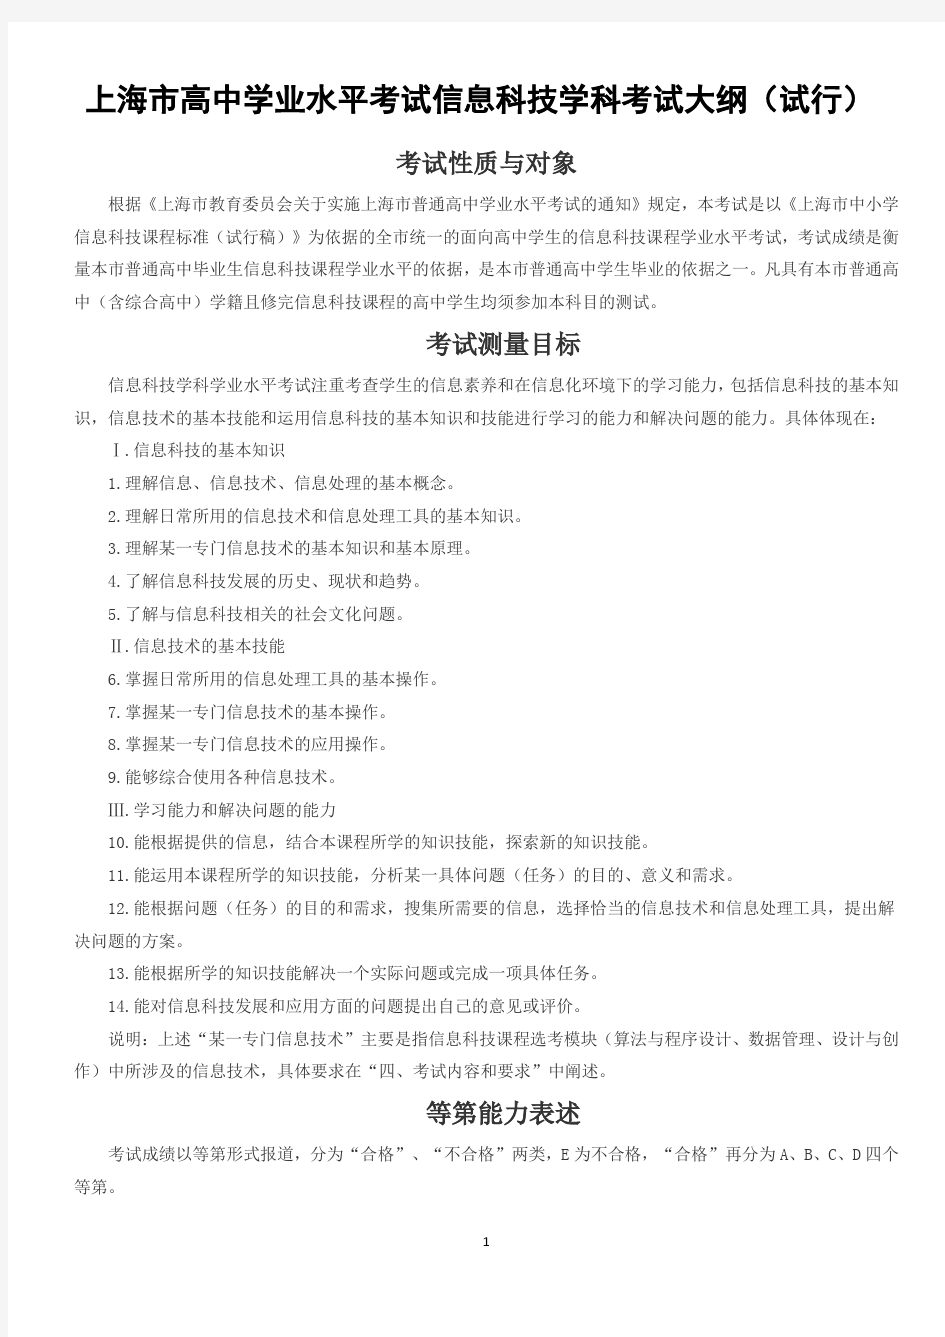 上海市高中学业水平考试信息科技学科考试大纲(正式发布版)